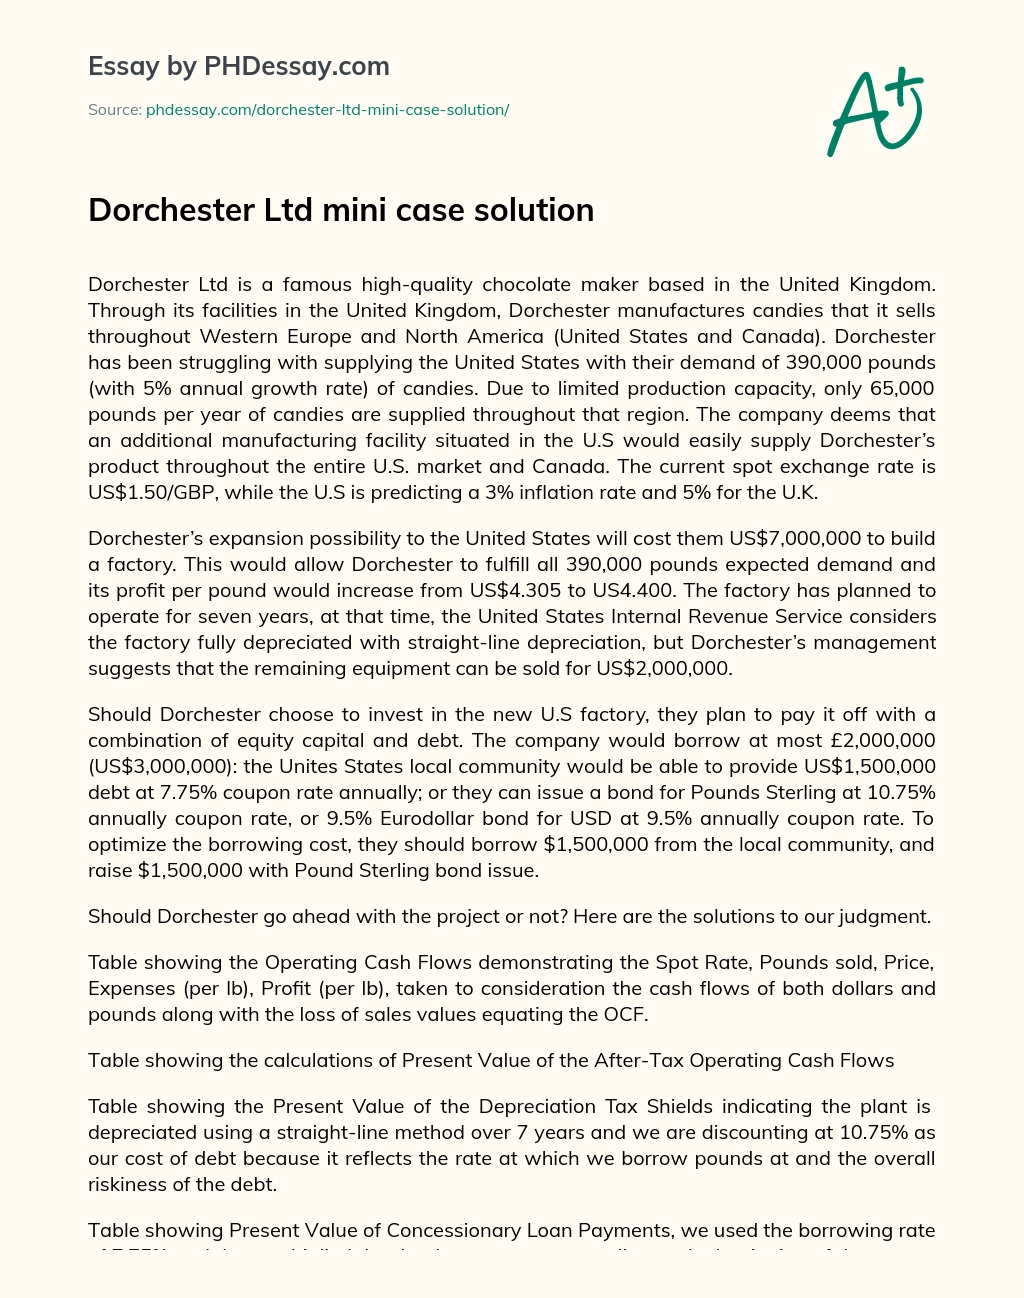 Dorchester Ltd mini case solution essay